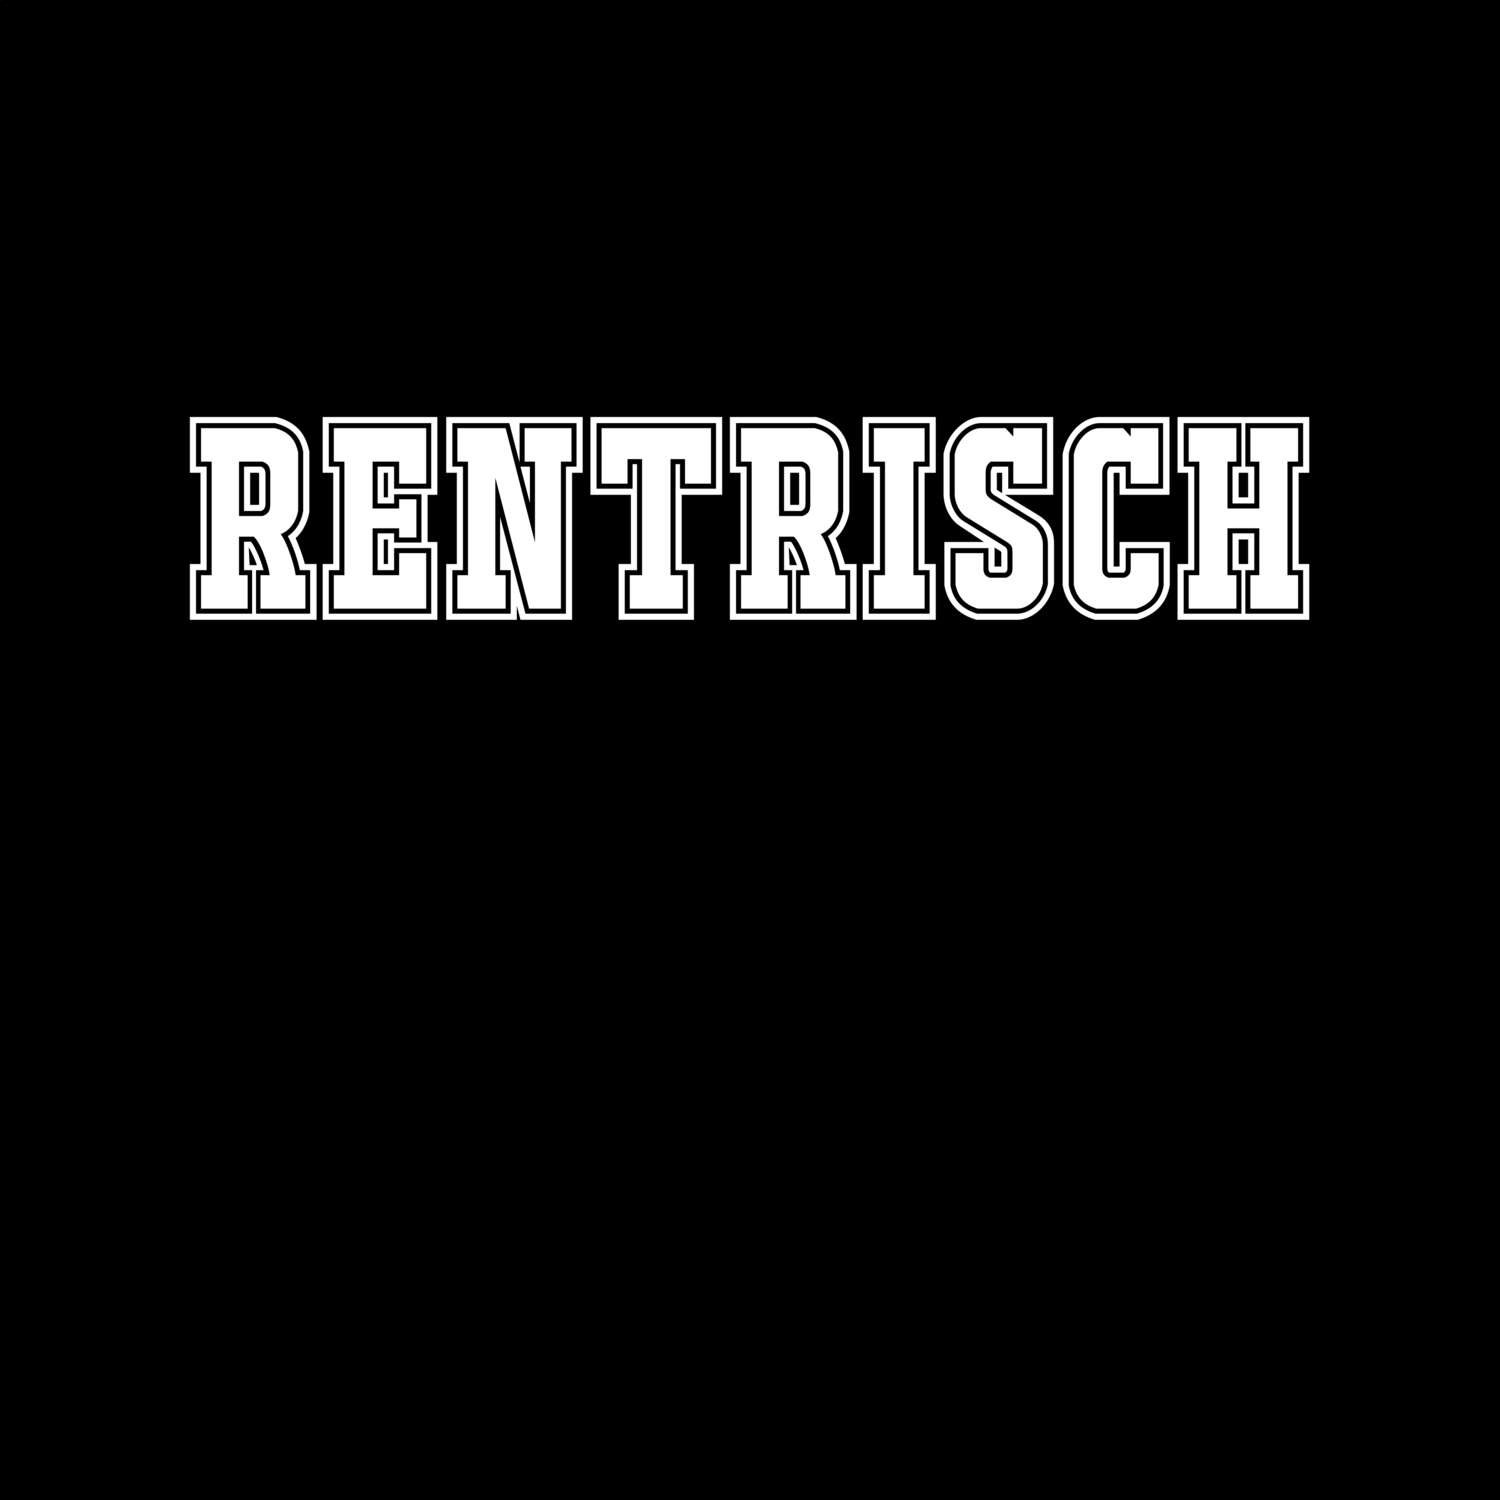 Rentrisch T-Shirt »Classic«